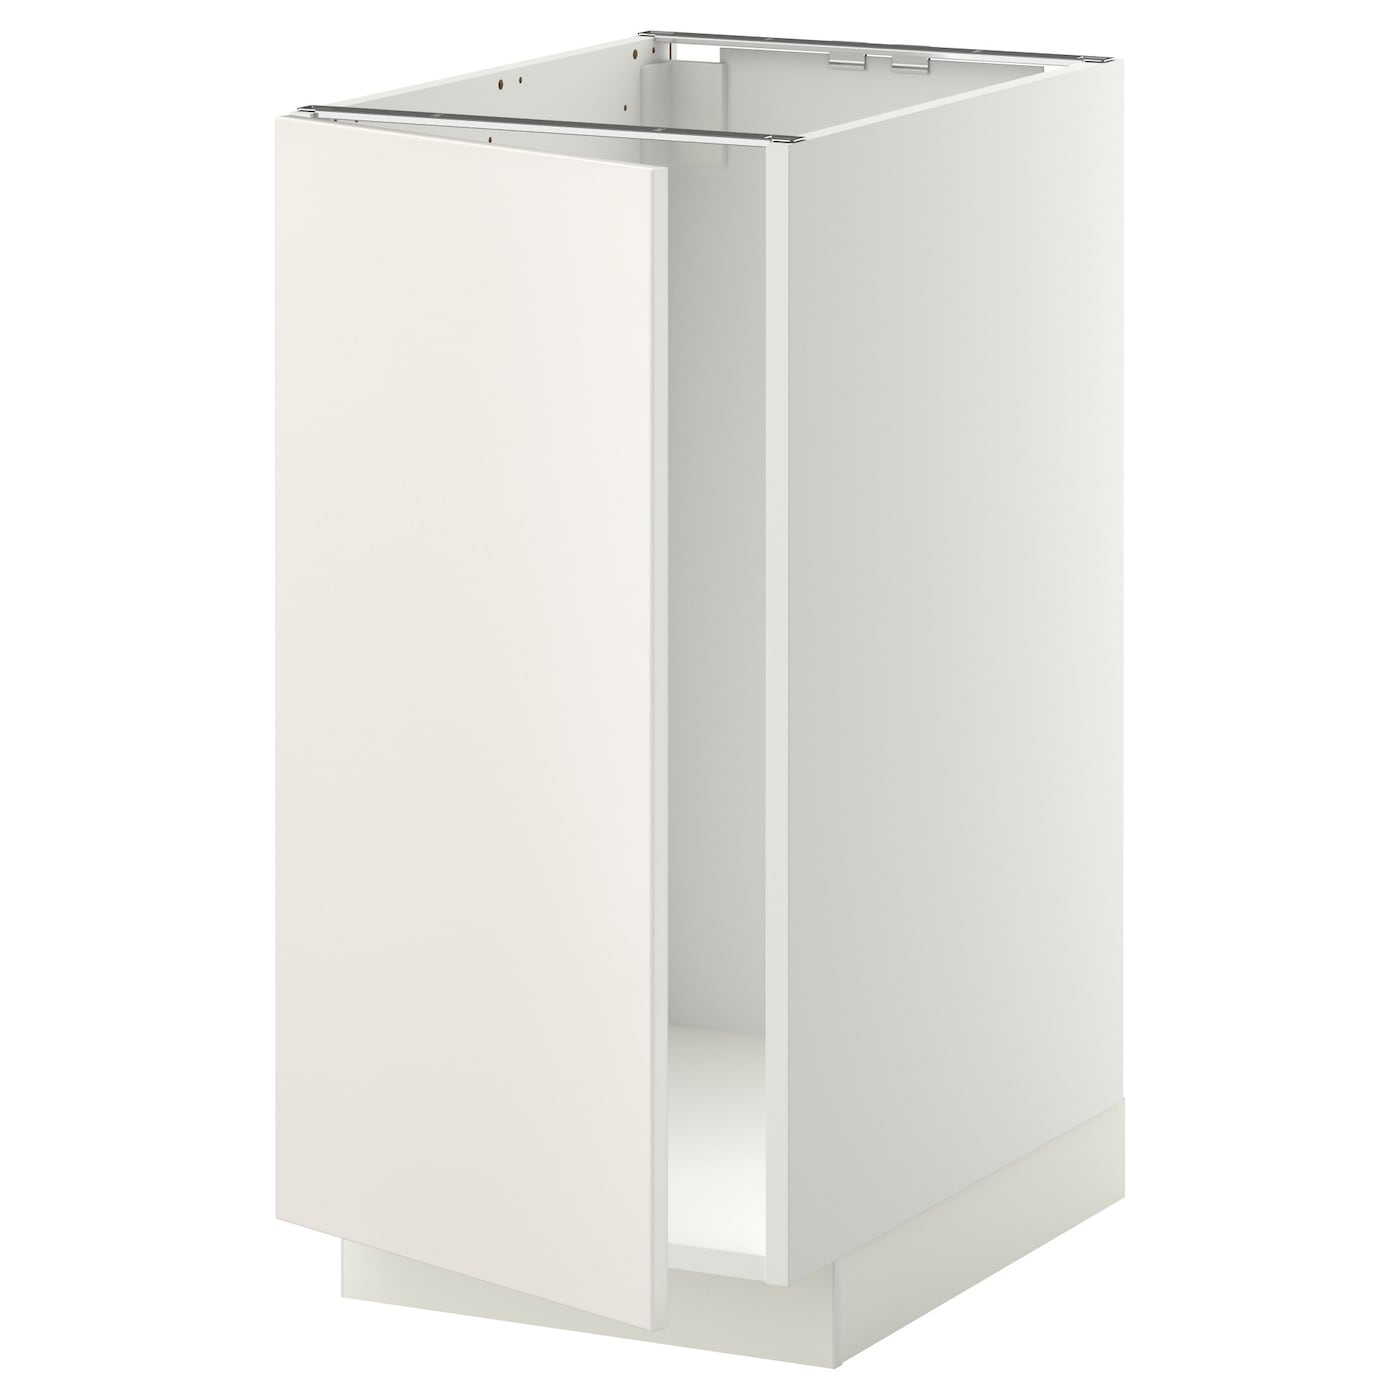 Напольный шкаф - IKEA METOD, 88x62x40см, белый, МЕТОД ИКЕА